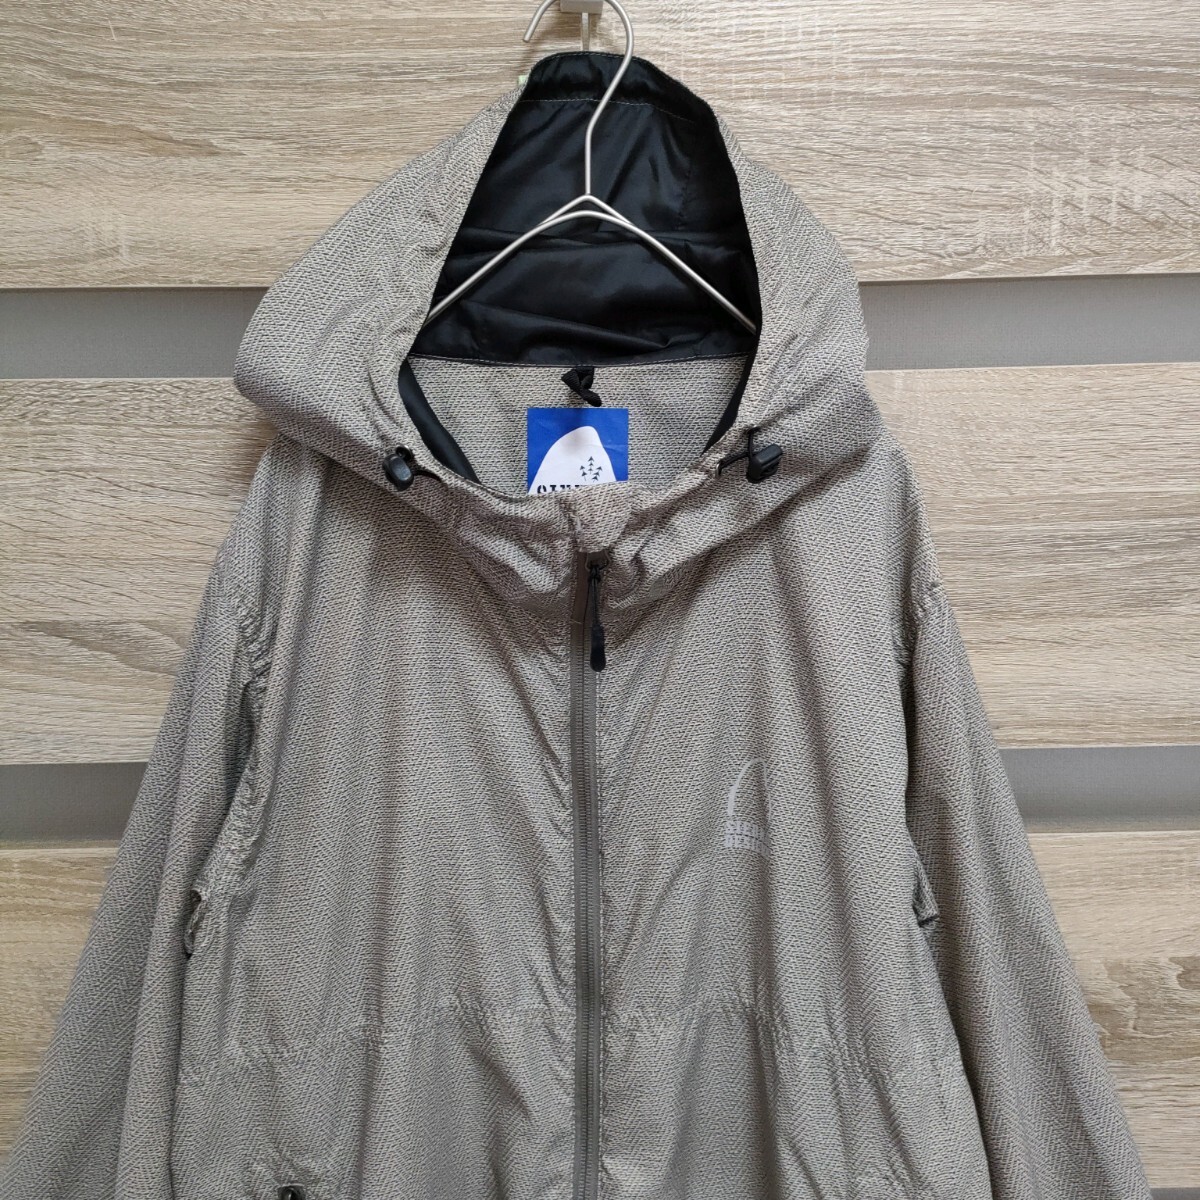 SIERRA DESIGNS( Sierra Design z) nylon jacket M beige (Ma178) sierra design zNo.10976210 # cat pohs shipping!